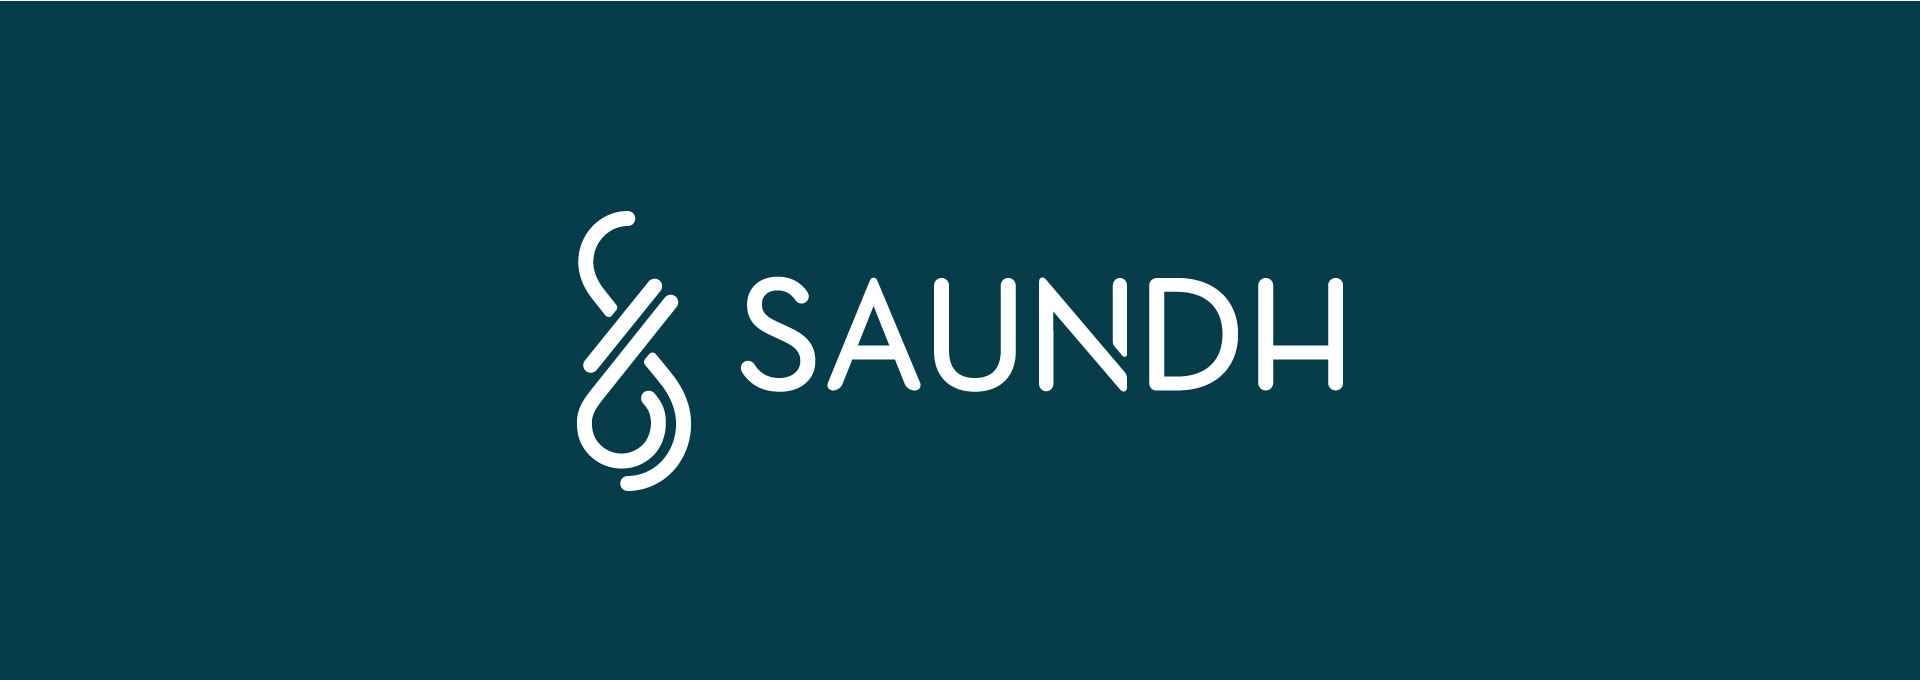 Saundh-02-identity-banner